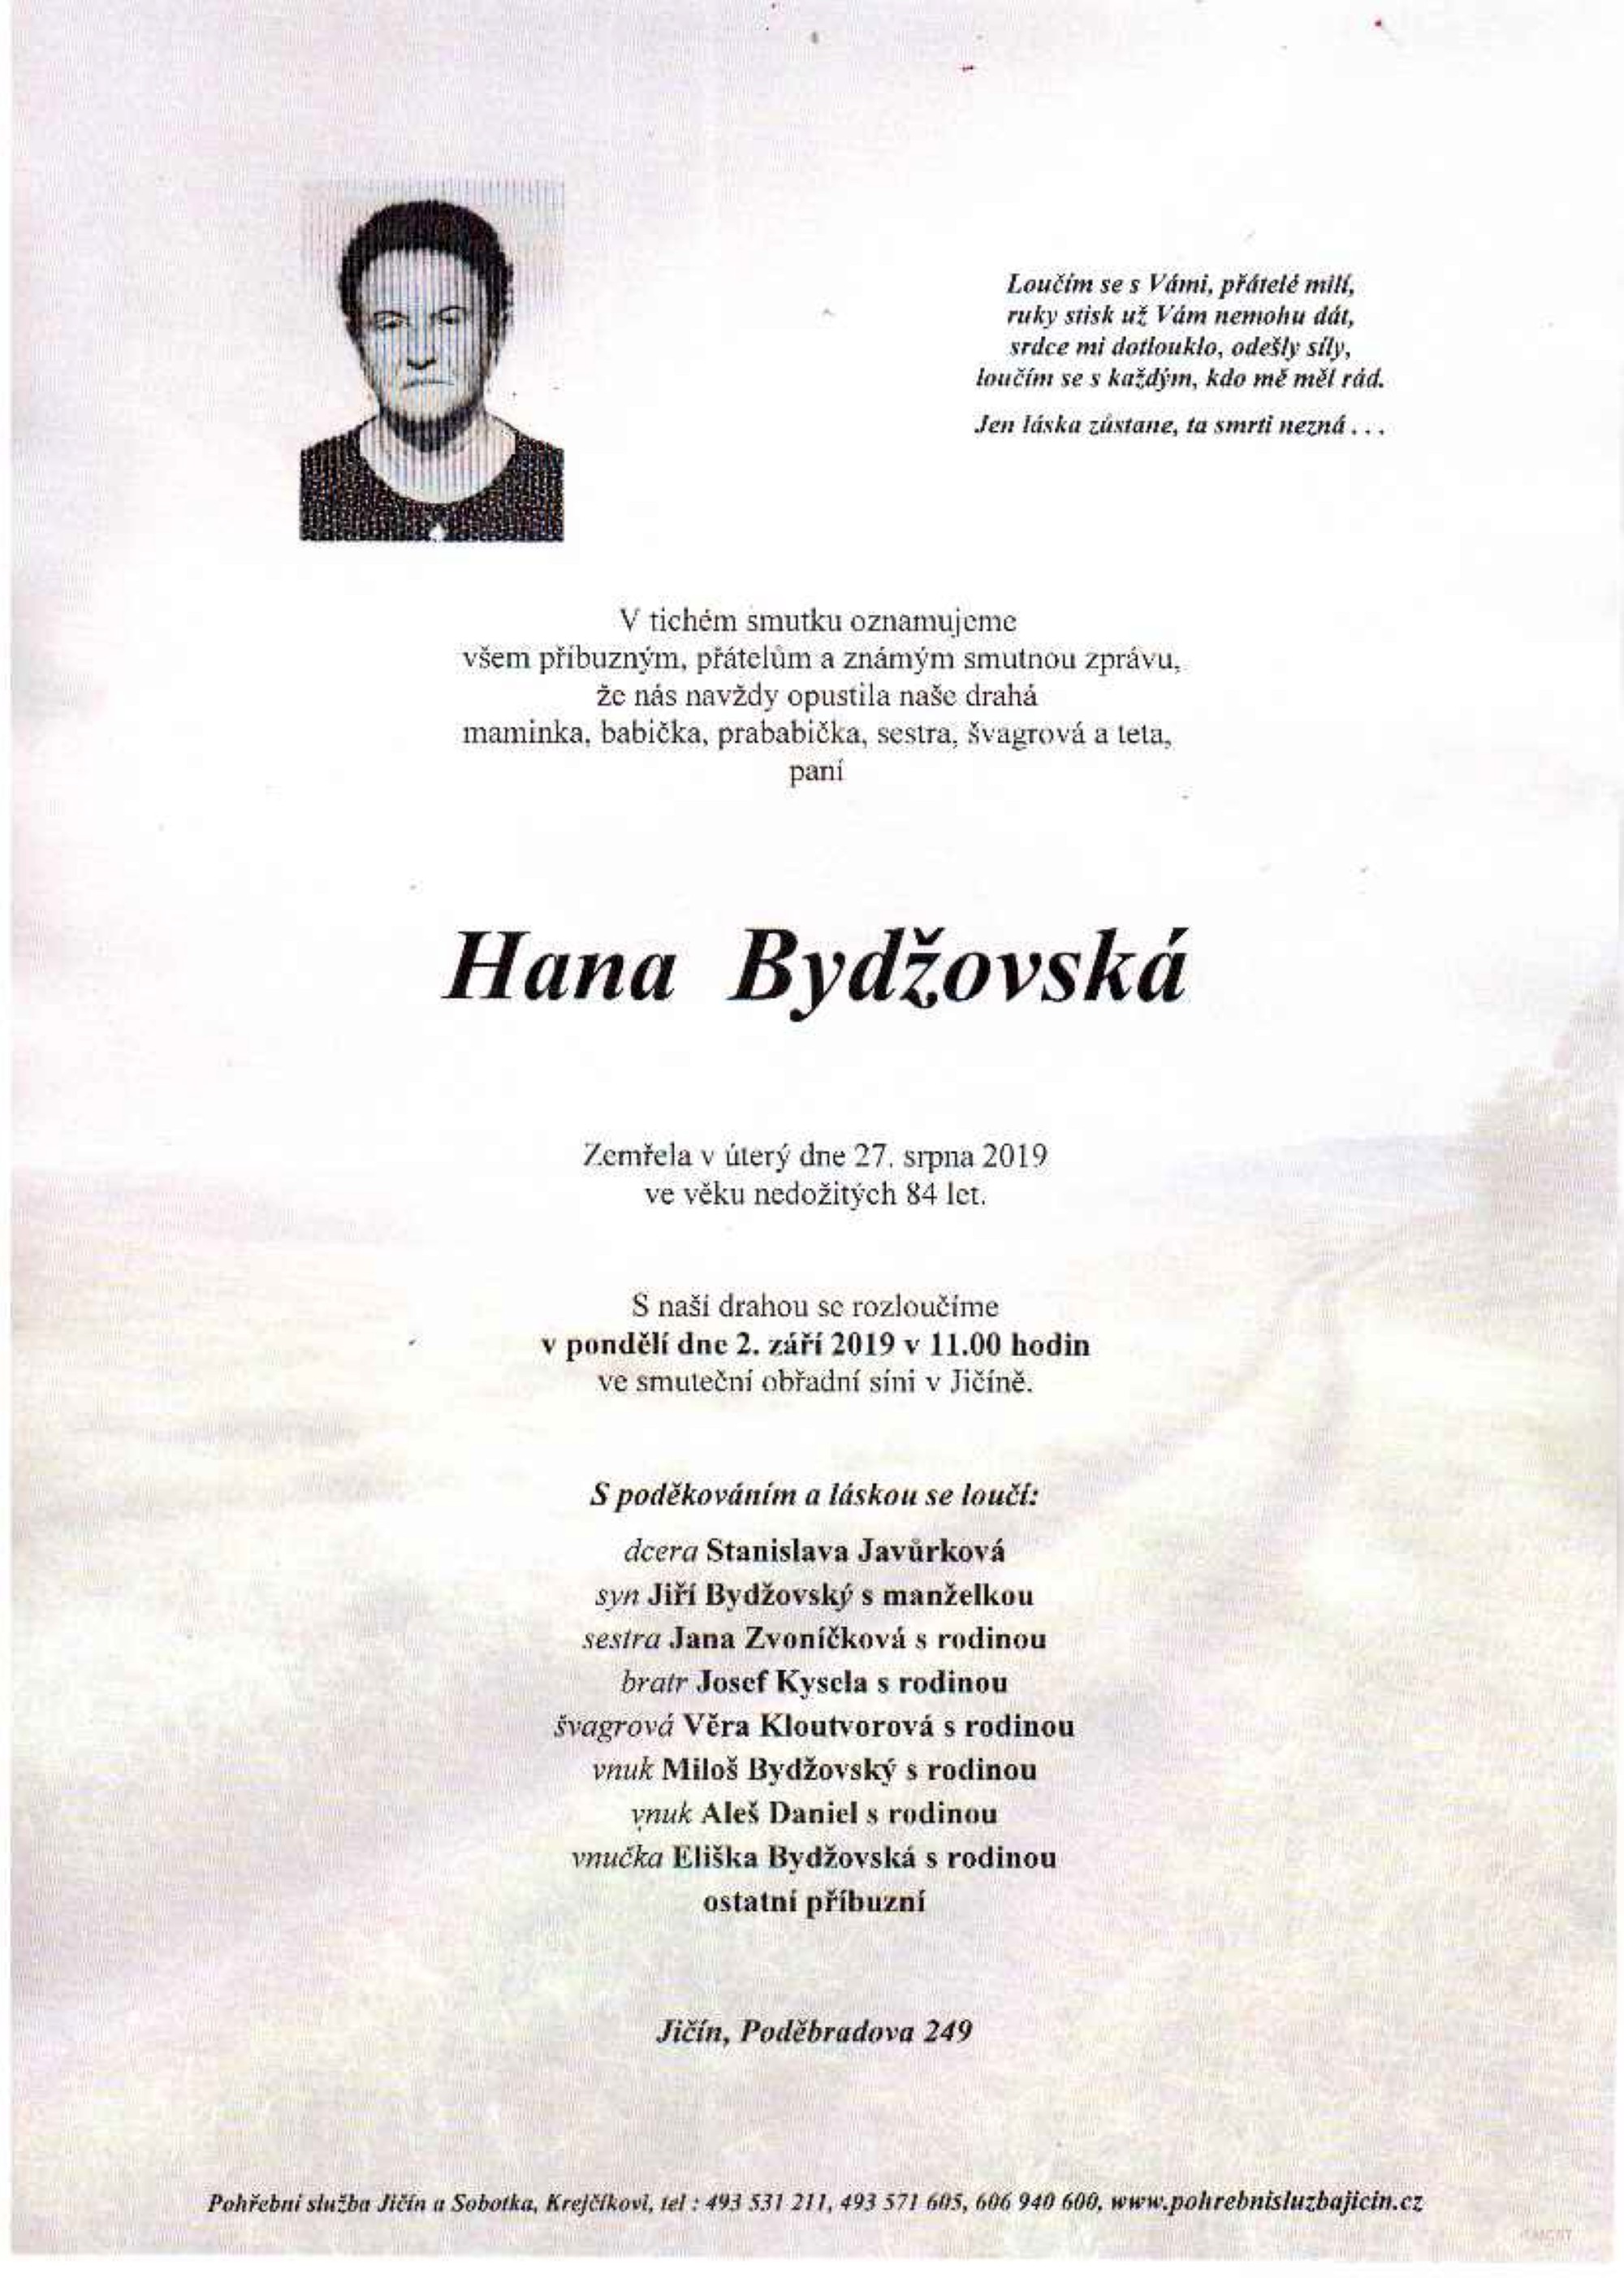 Hana Bydžovská